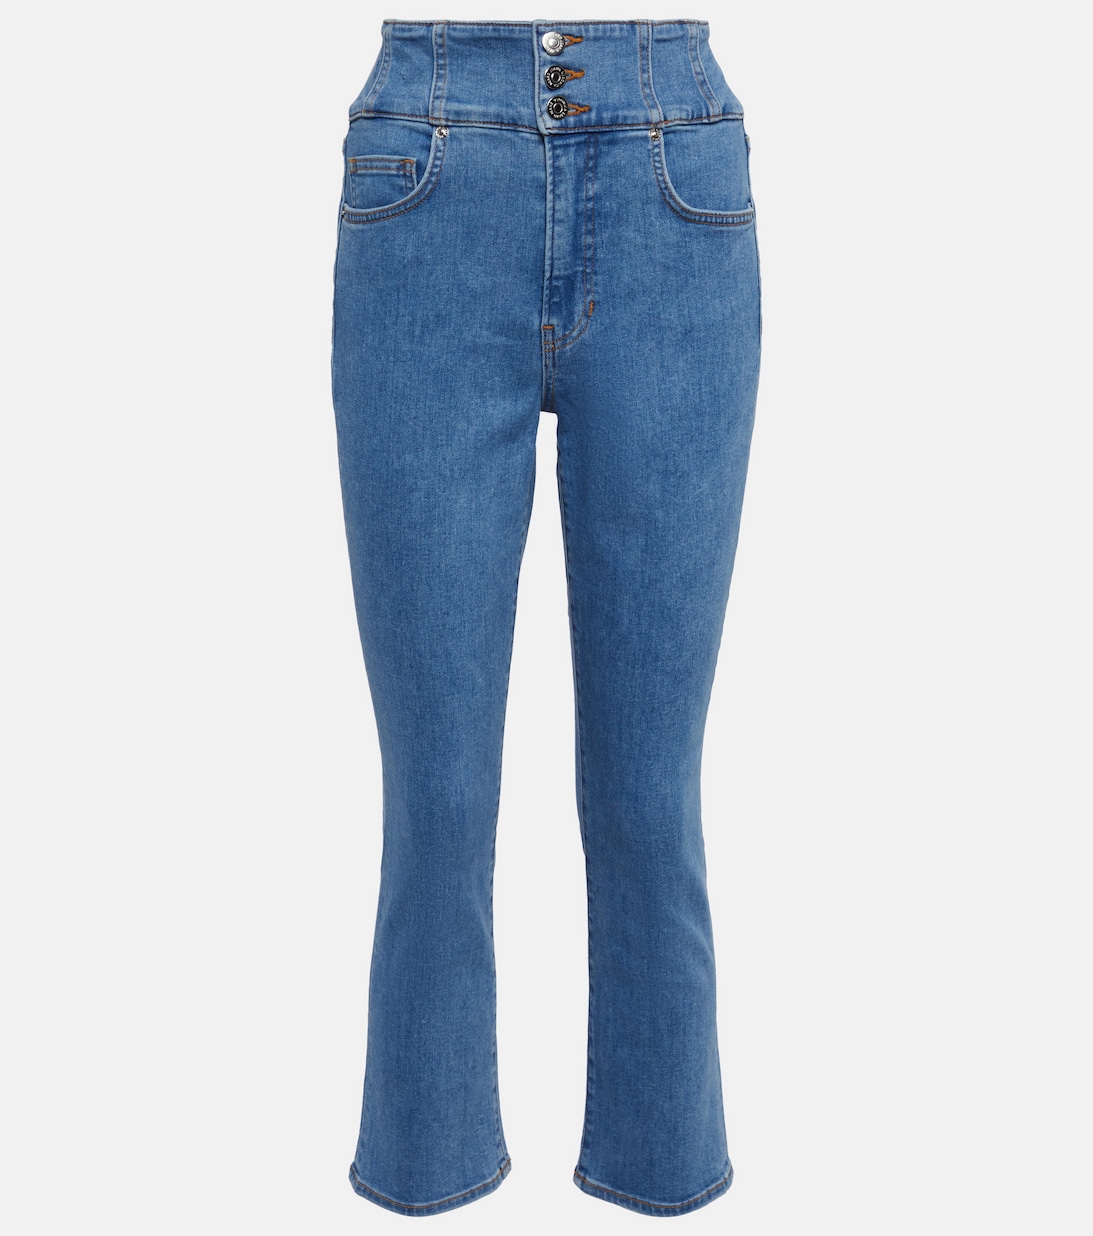 Расклешенные джинсы Carly с завышенной талией VERONICA BEARD, синий расклешенные джинсы carly со средней посадкой veronica beard цвет sierra blue